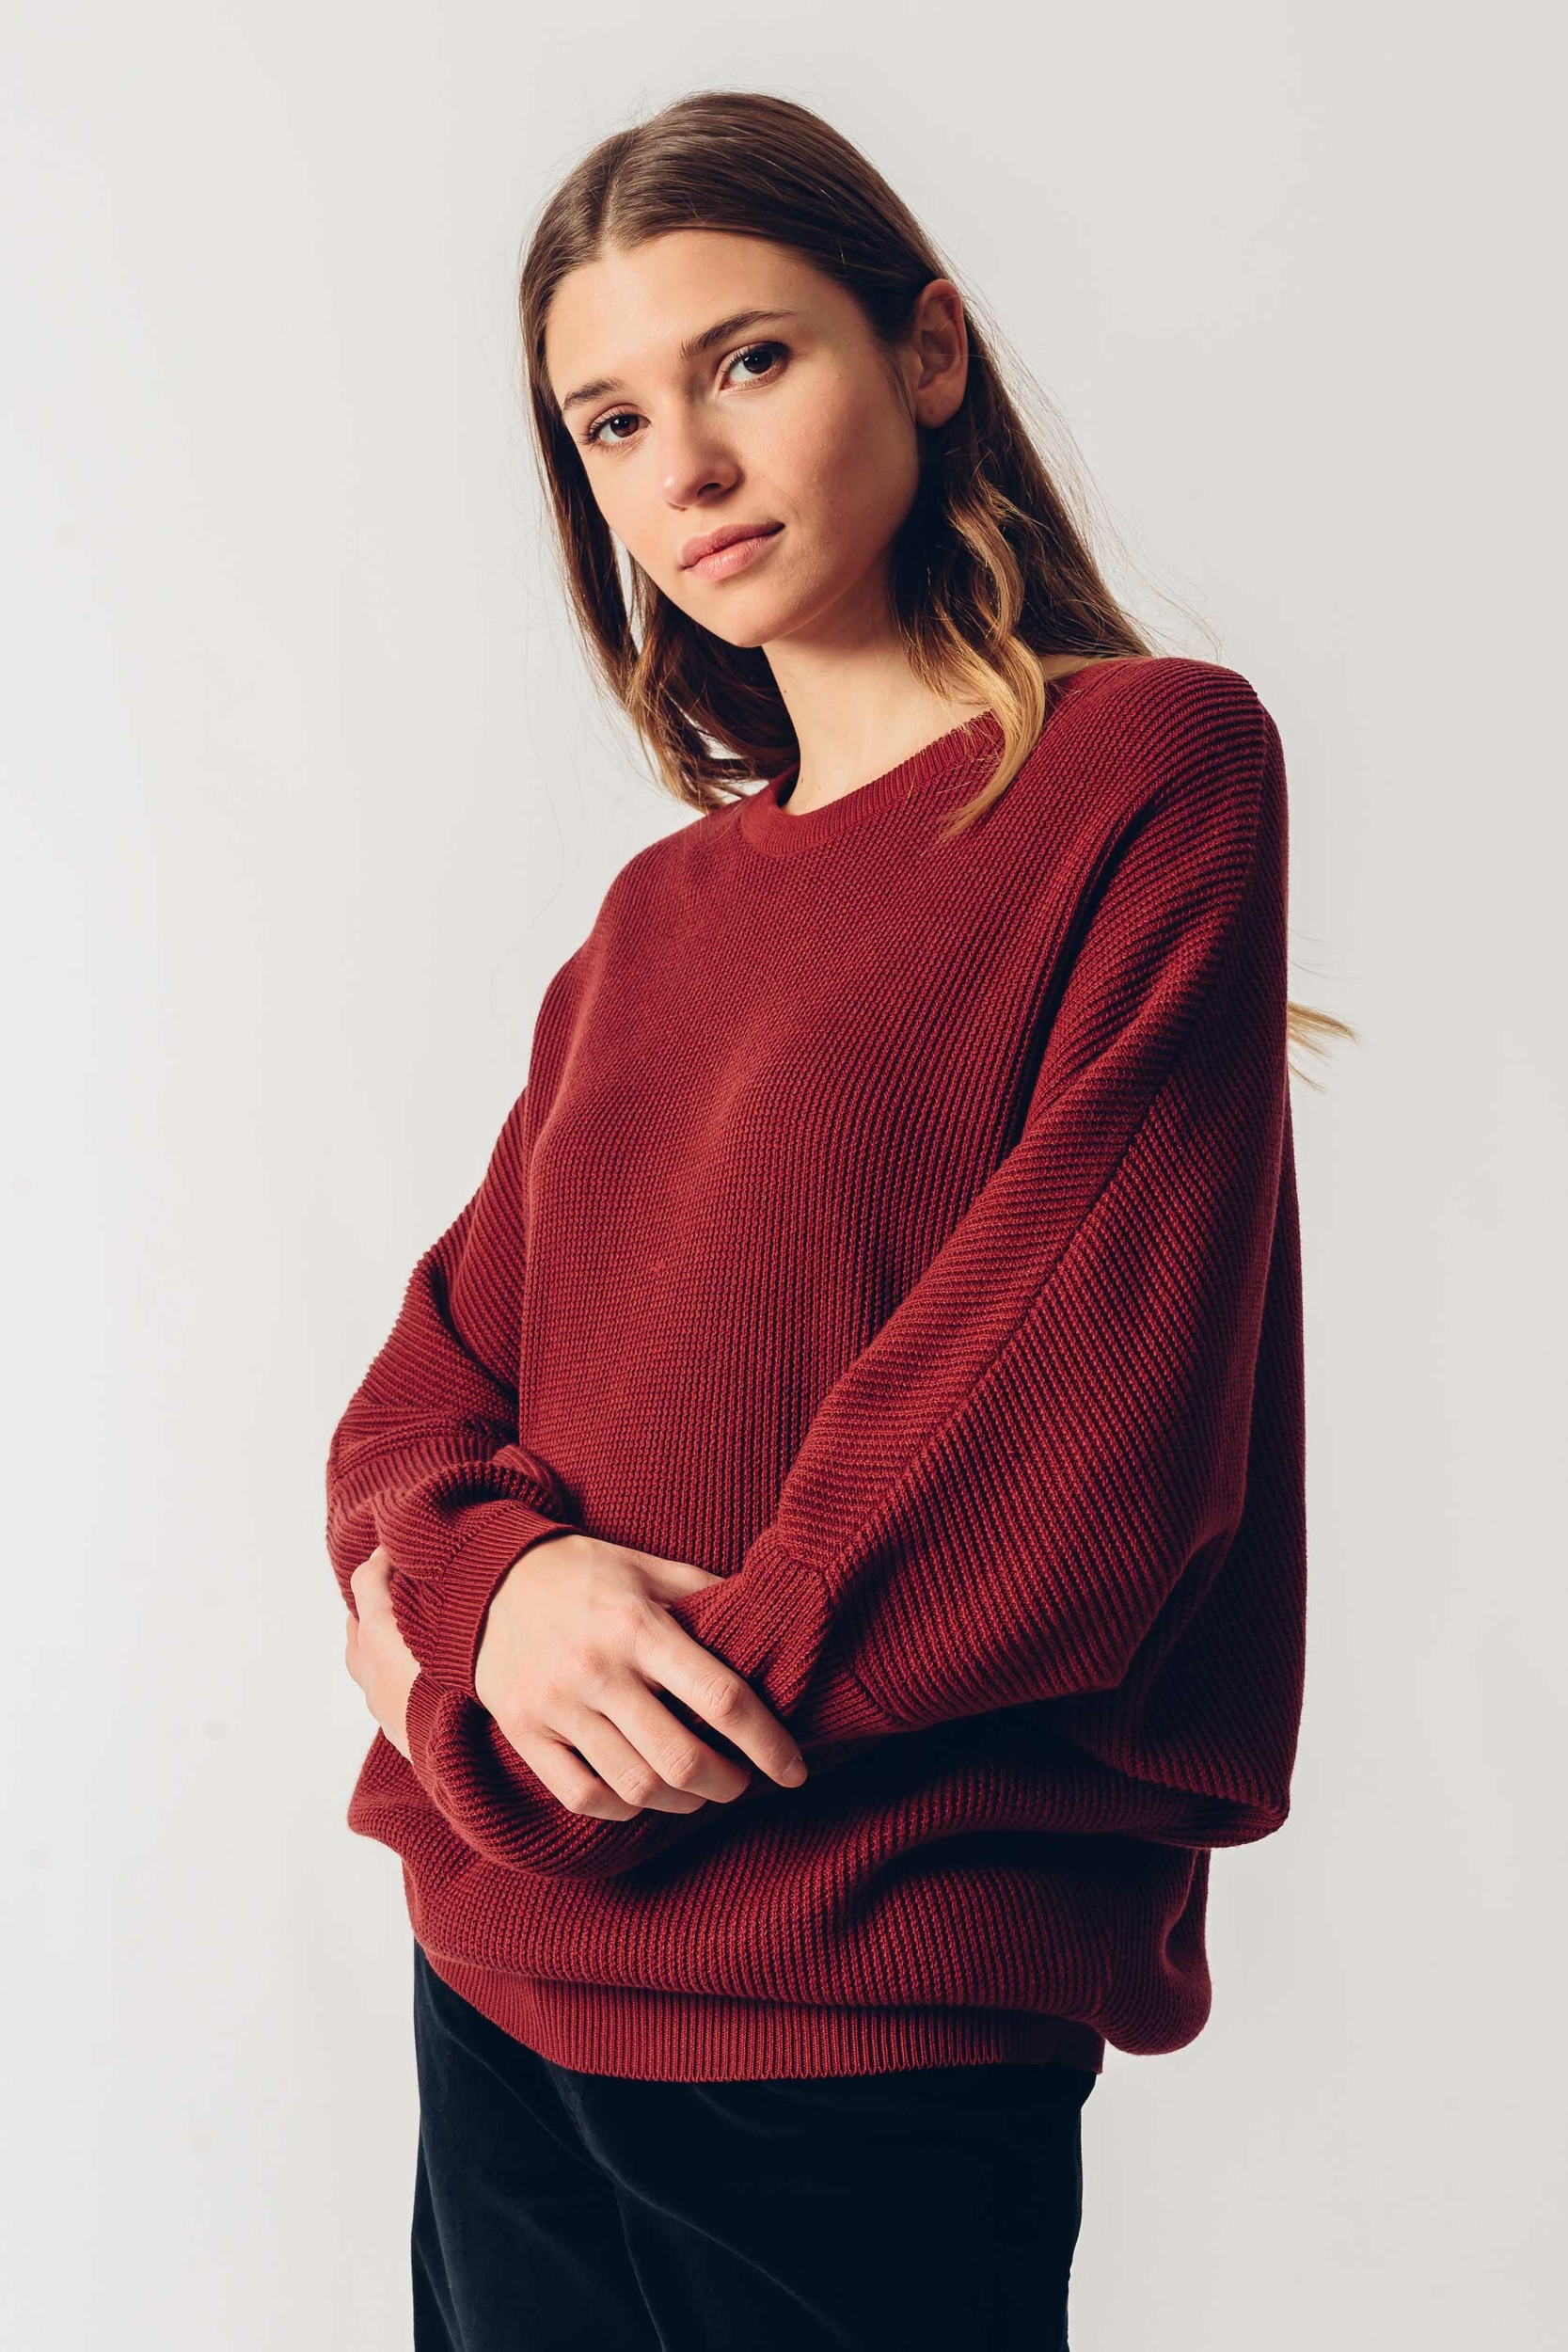 sweater-organic-cotton-xadi-skfk-wsw00439-p9-ofb